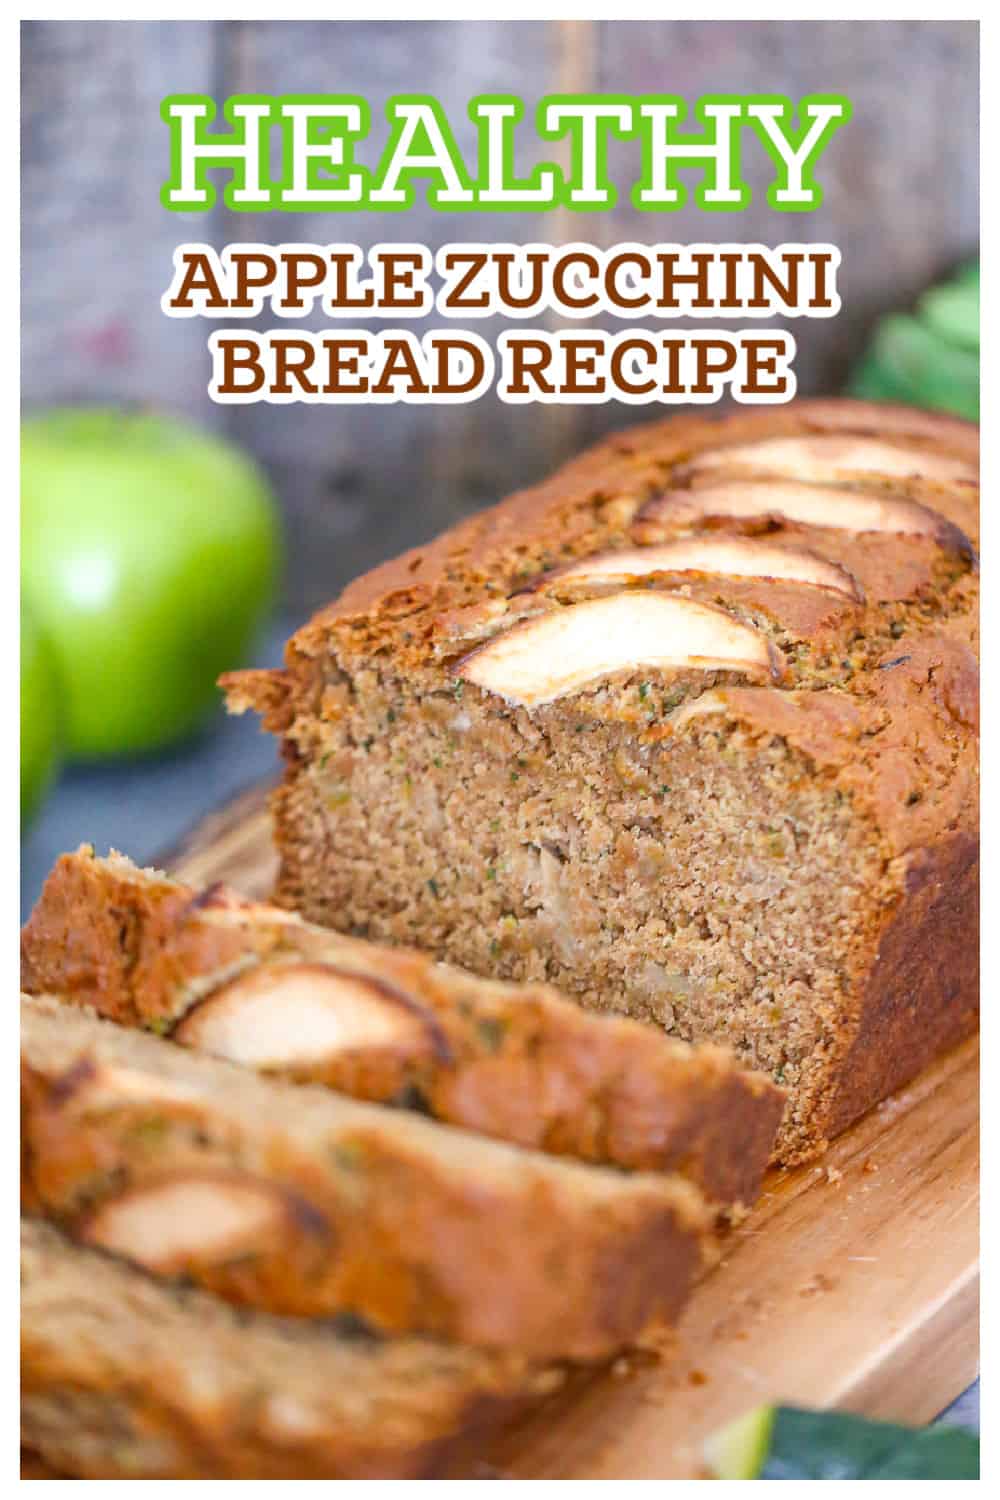 Healthy Apple Zucchini Bread